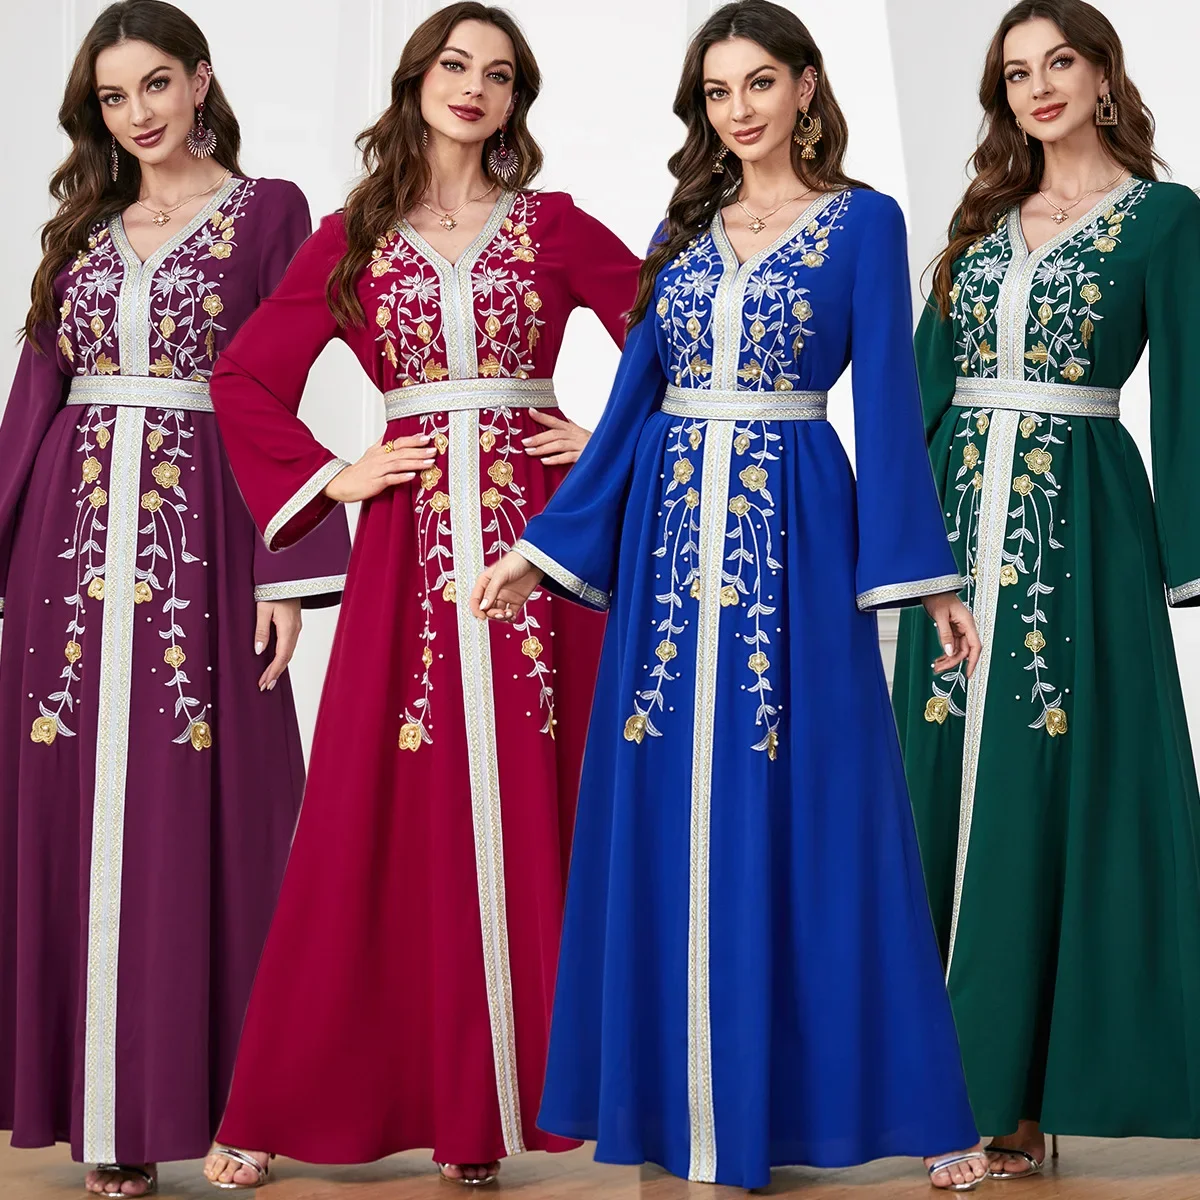 

Средневосточный мусульманский осенне-зимний новый Abaya женское модное платье с вышивкой бисером арабское платье